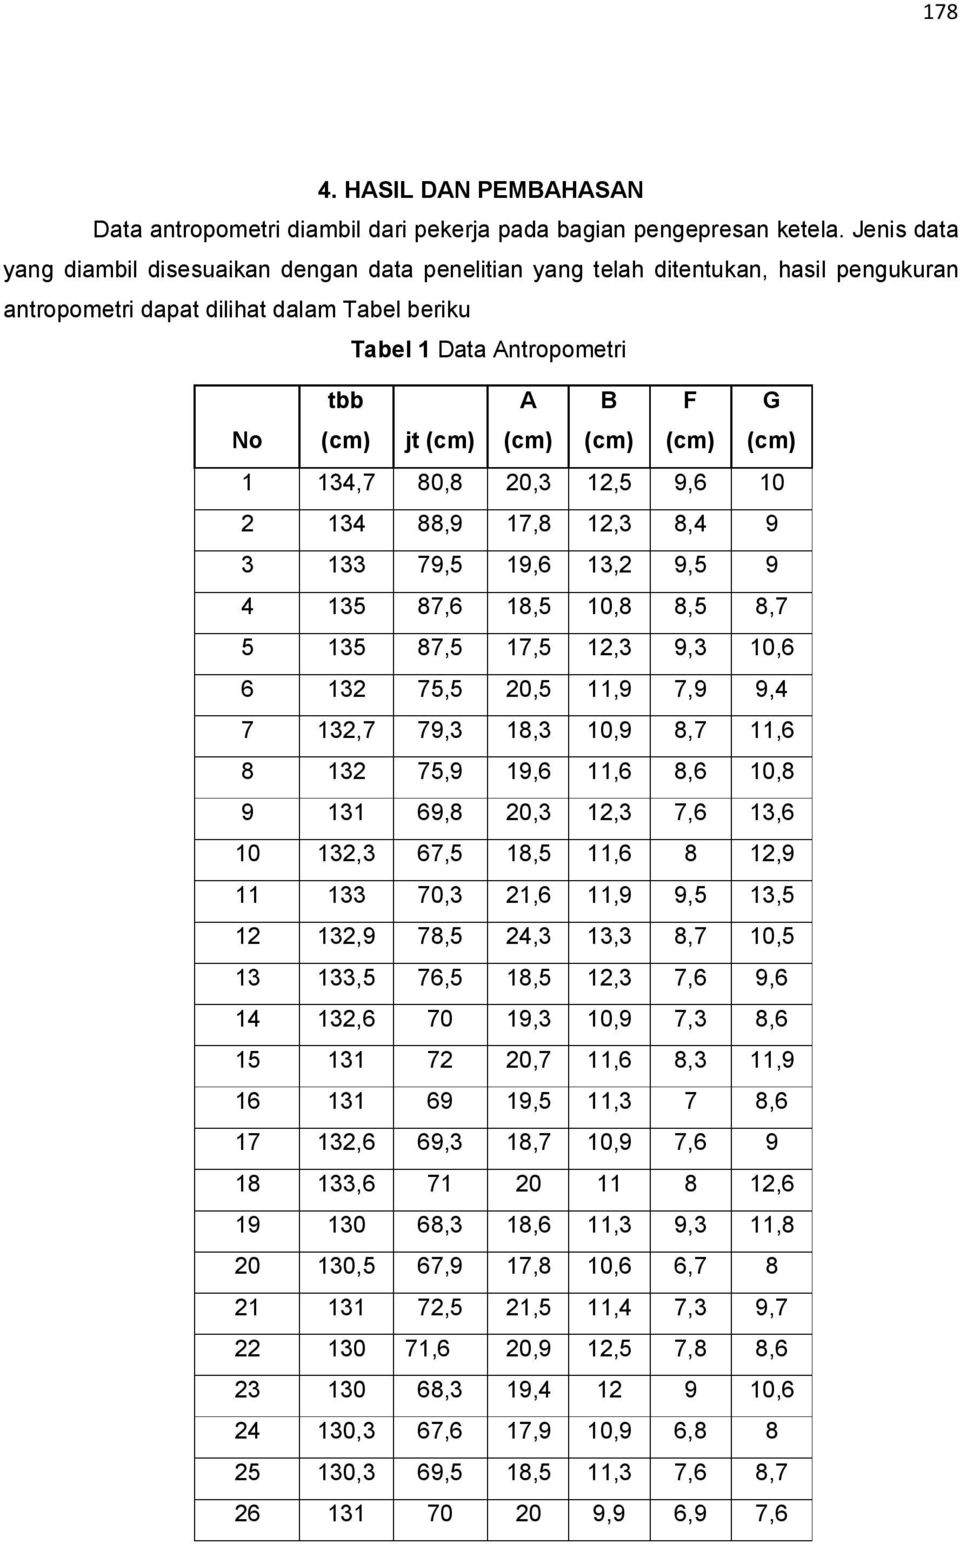 Tabel beriku Tabel Data Antropometri No tbb jt A B F G,7,,,,6, 7,,, 7,,6,, 7,6,,,,7 7, 7,,,,6 6 7,,, 7,, 7,7 7,,,,7,6 7,,6,6,6, 6,,,